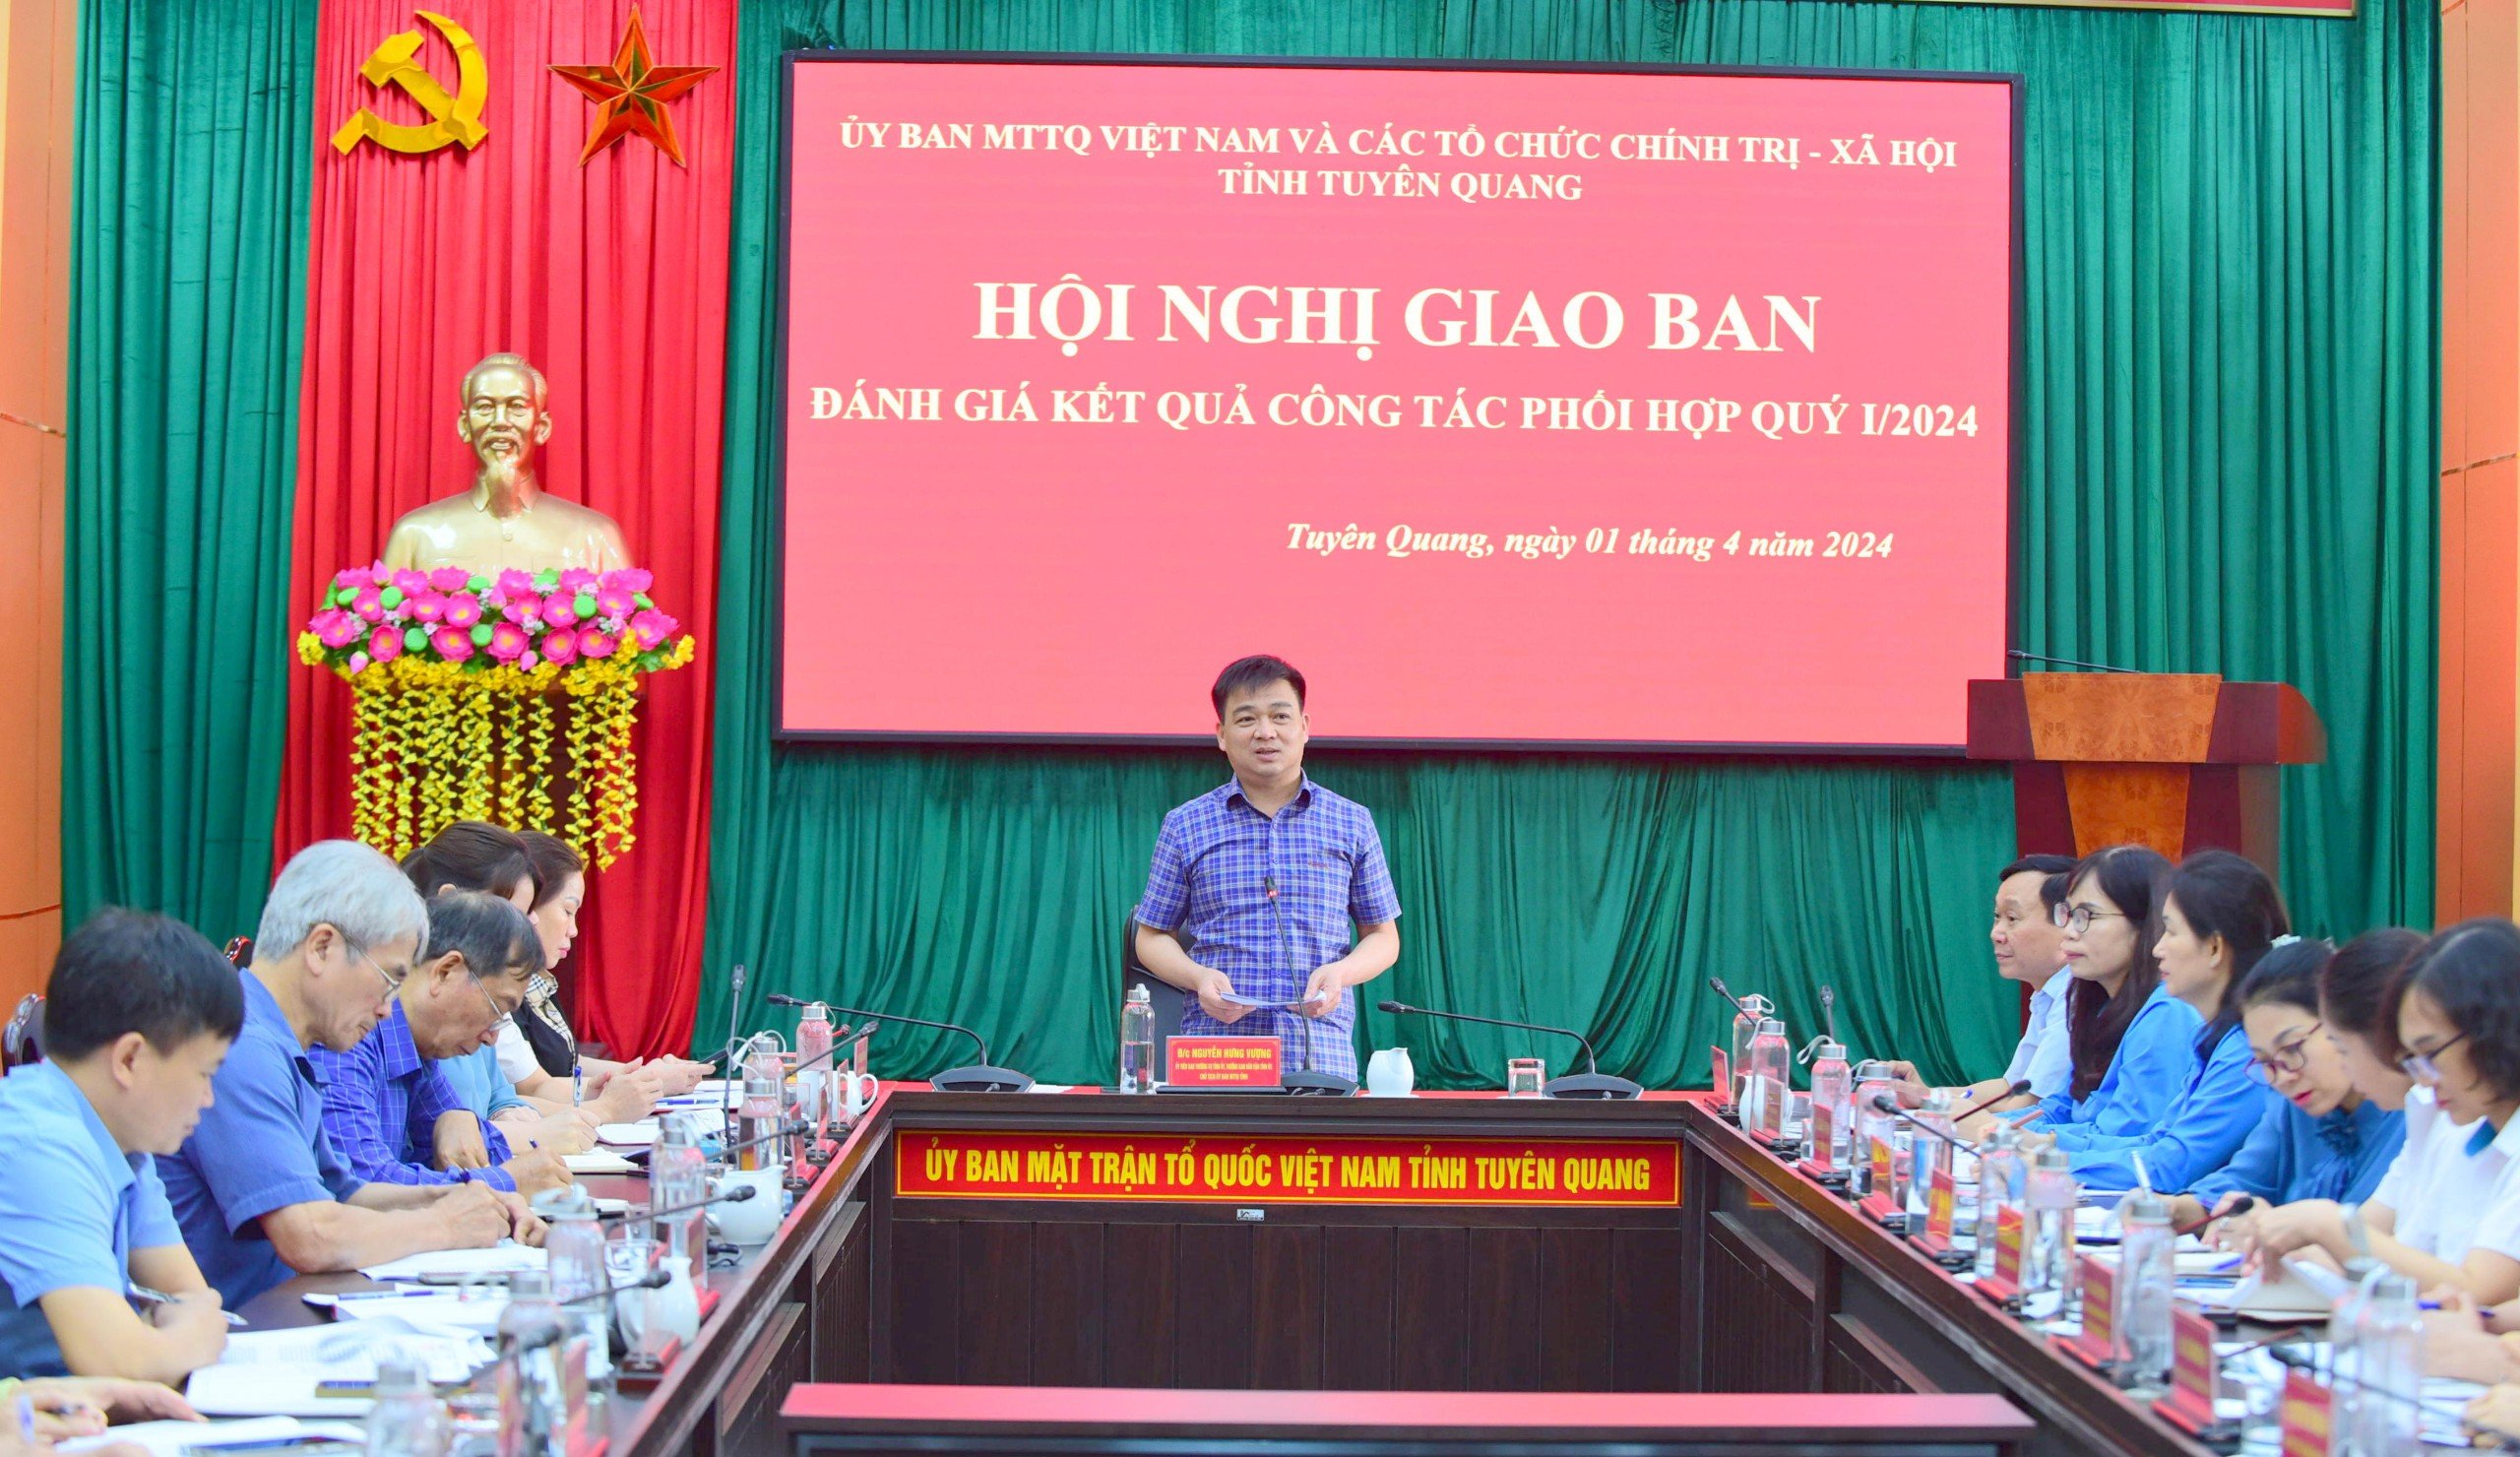 Uỷ ban MTTQ và các tổ chức chính trị - xã hội tỉnh Tuyên Quang tổ chức hội nghị giao ban đánh giá kết quả công tác phối hợp quý I, triển khai nhiệm vụ quý II năm 2024